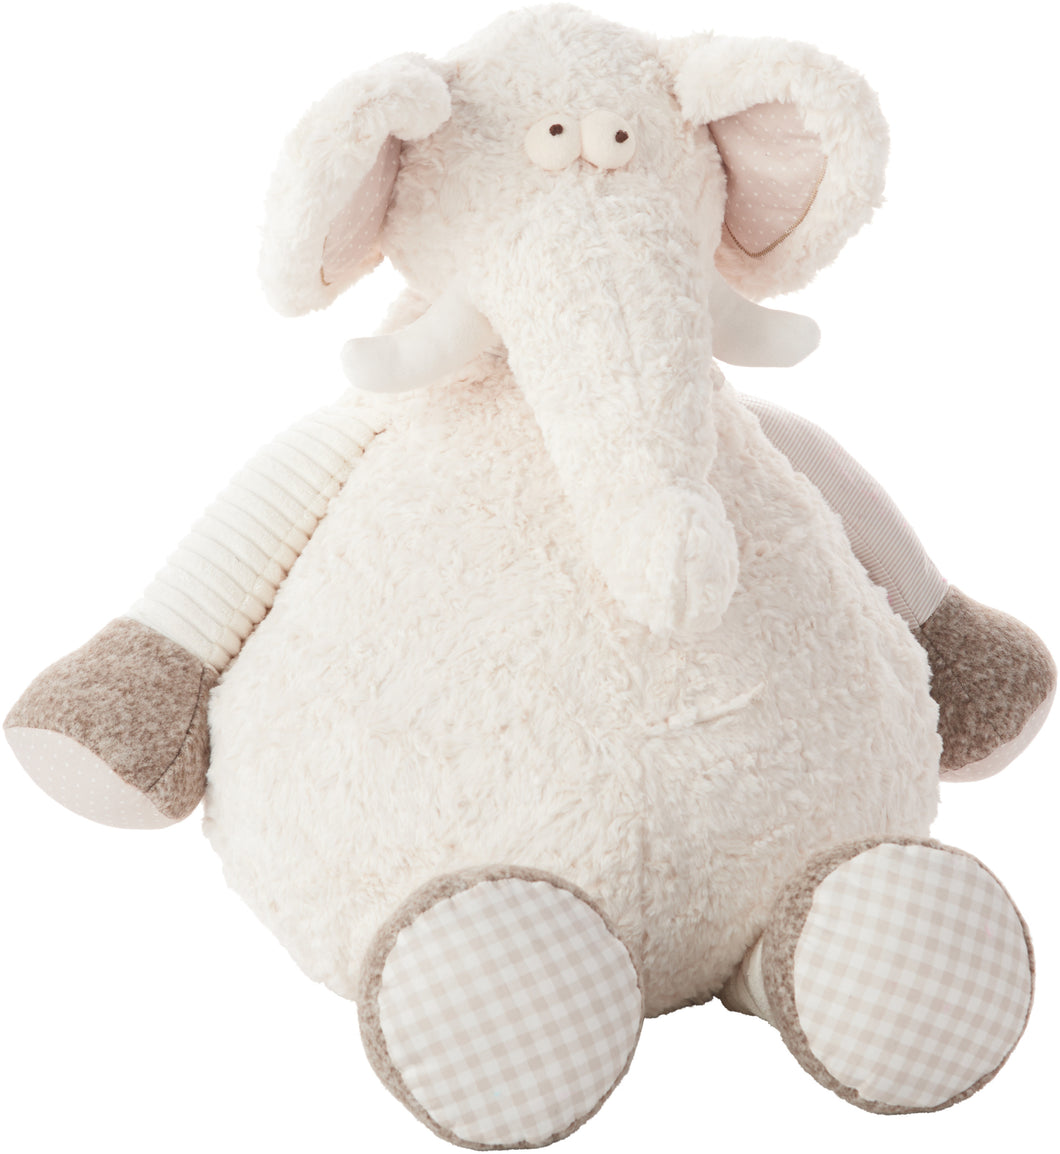 Mina Victory Plushlines Ivory Elephant Plush Animal Pillow Toy N1463 22